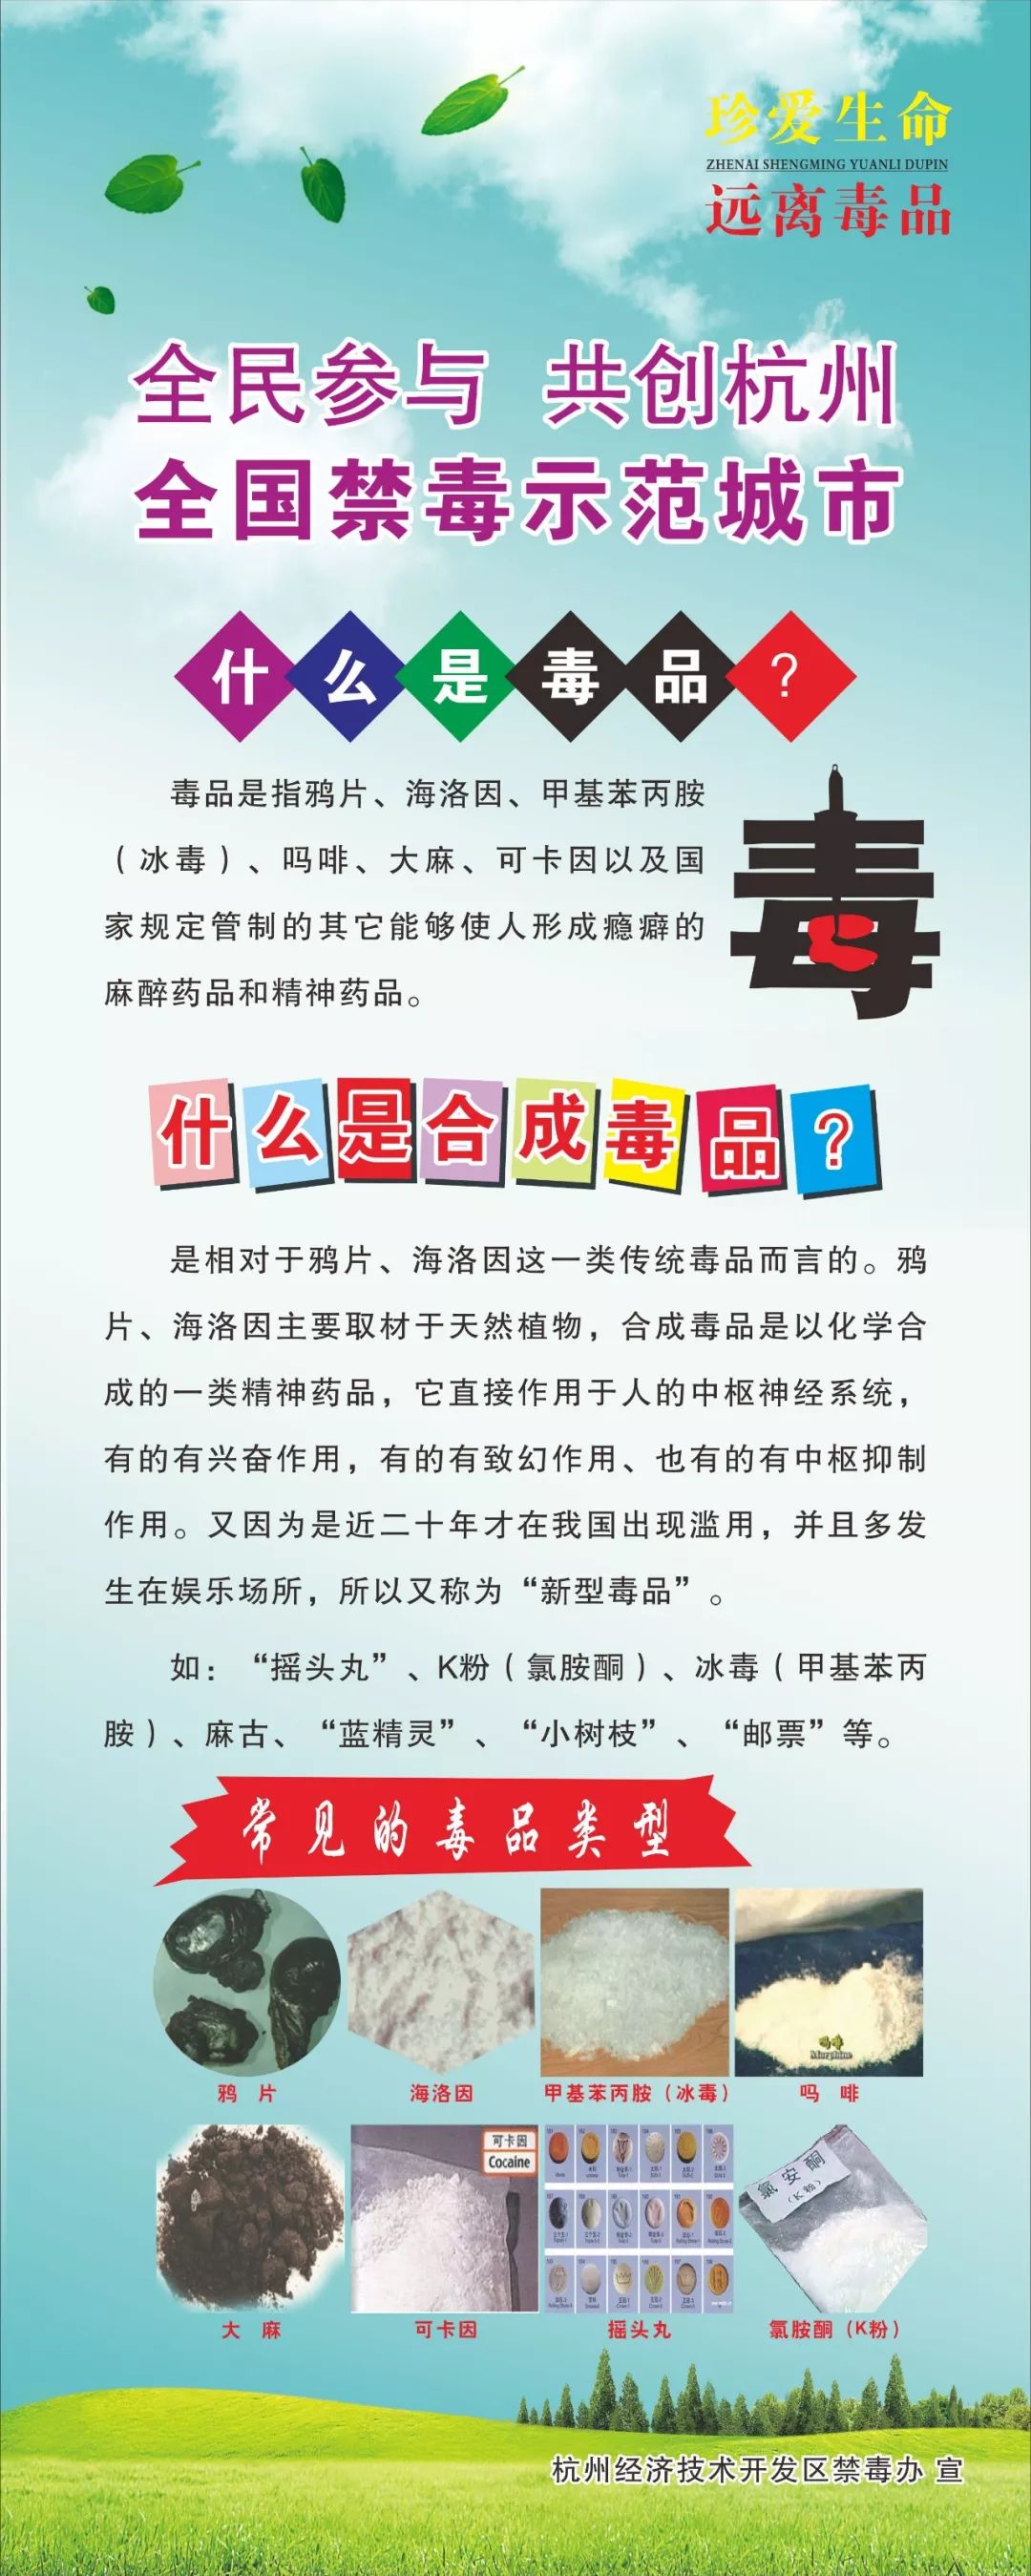 抵制毒品,参与禁毒!杭州经济技术开发区积极响应禁毒号召!